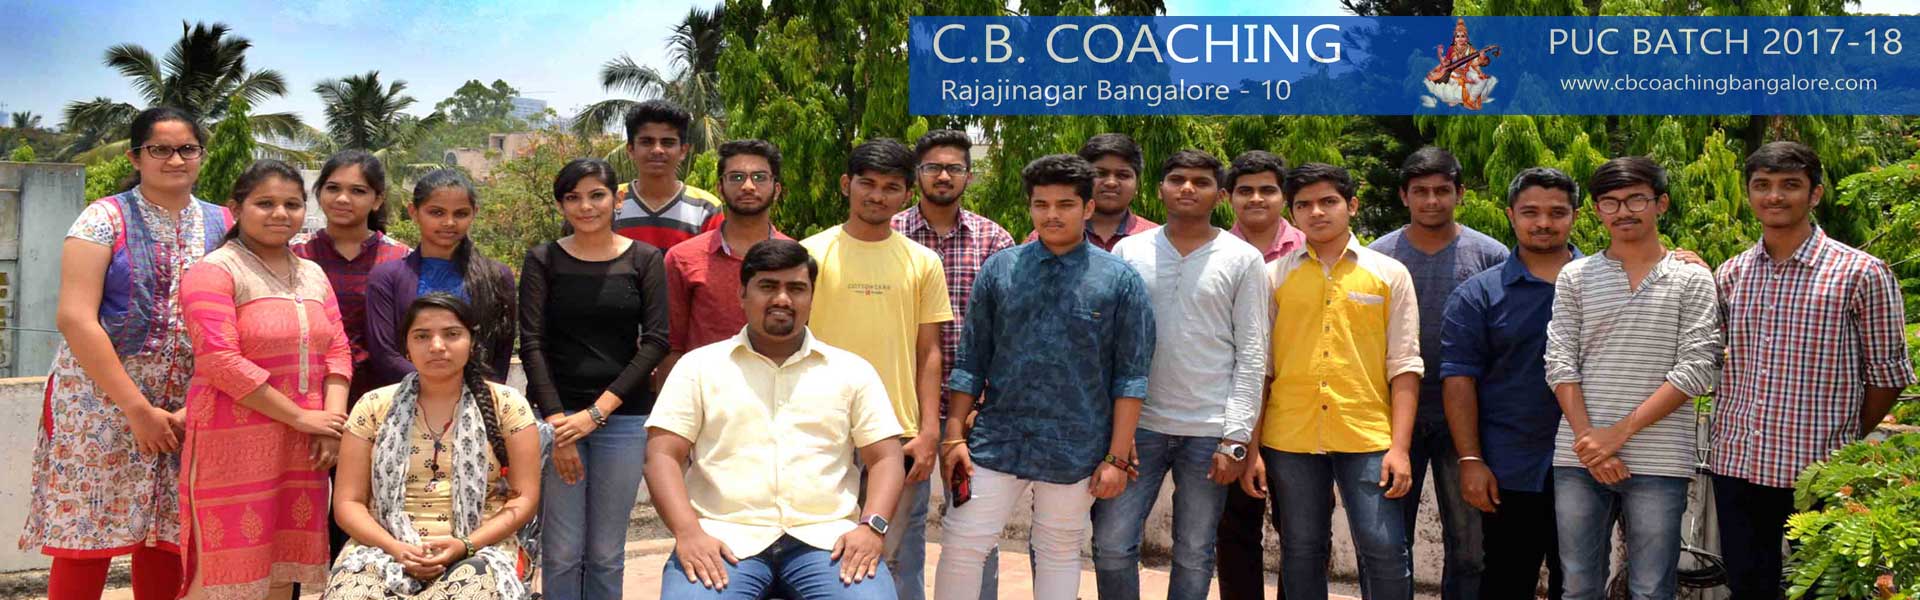 CB Coaching Bangalore